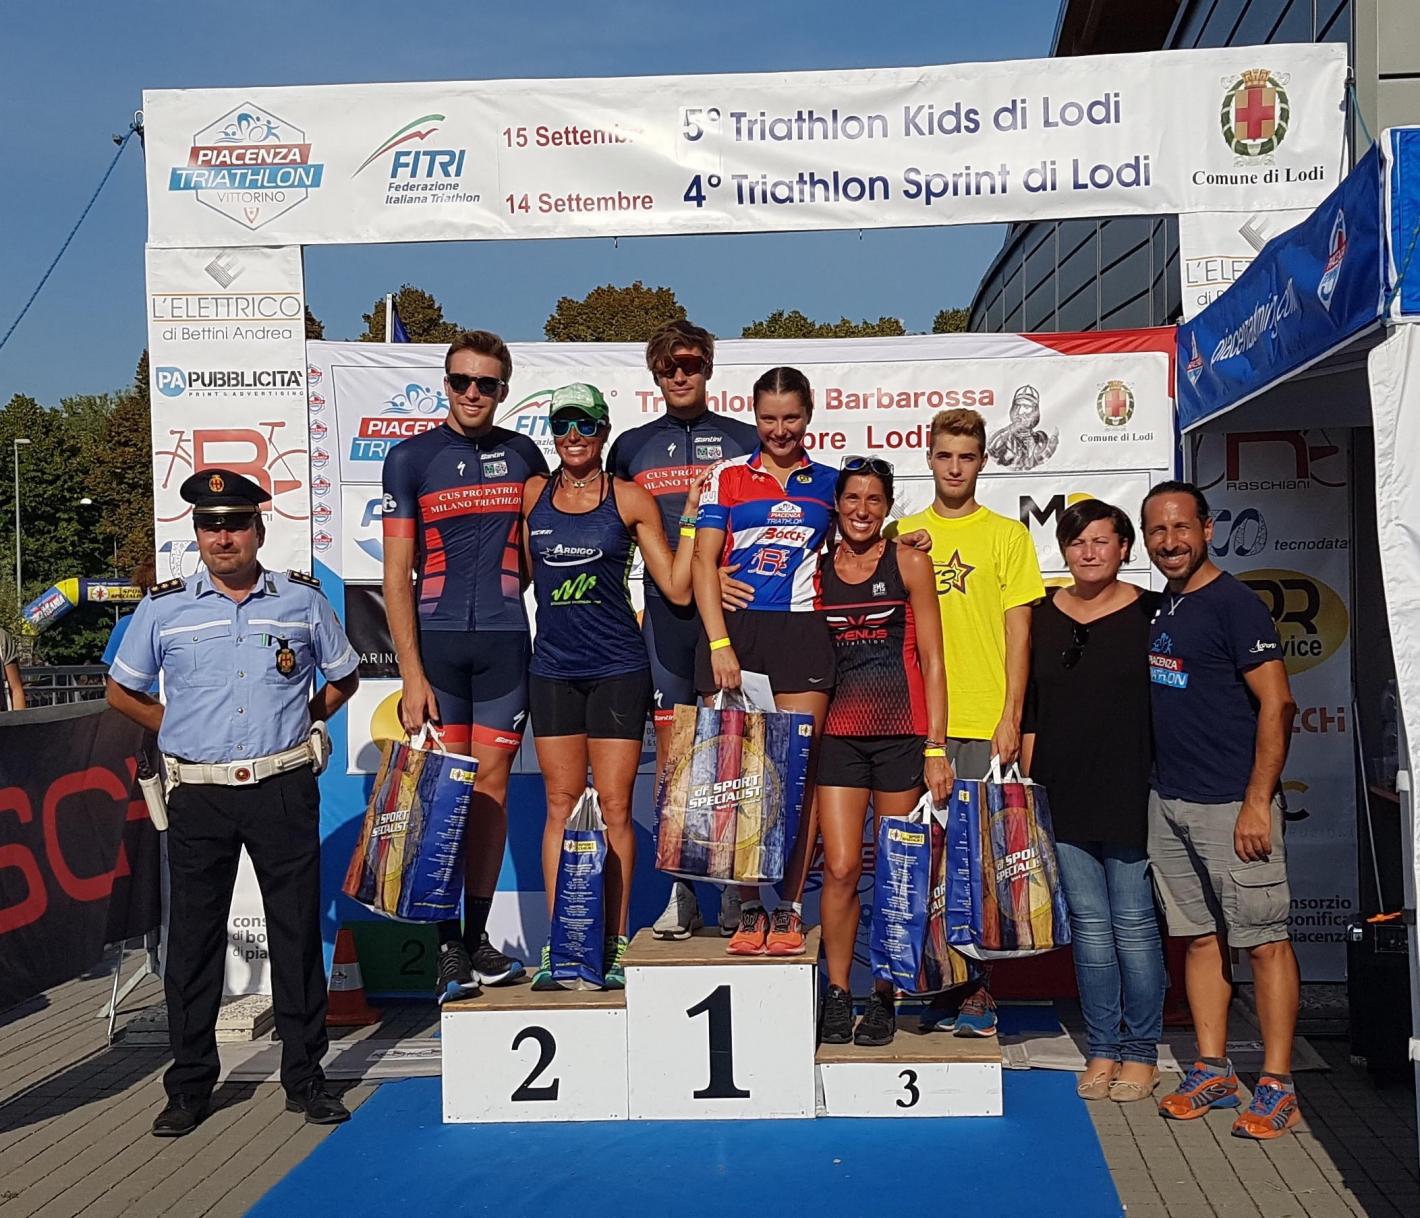 images/2020/Gare_ITALIA/triathlon_del_barbarossa/medium/piacenza_sport_5_triatlhon.jpg